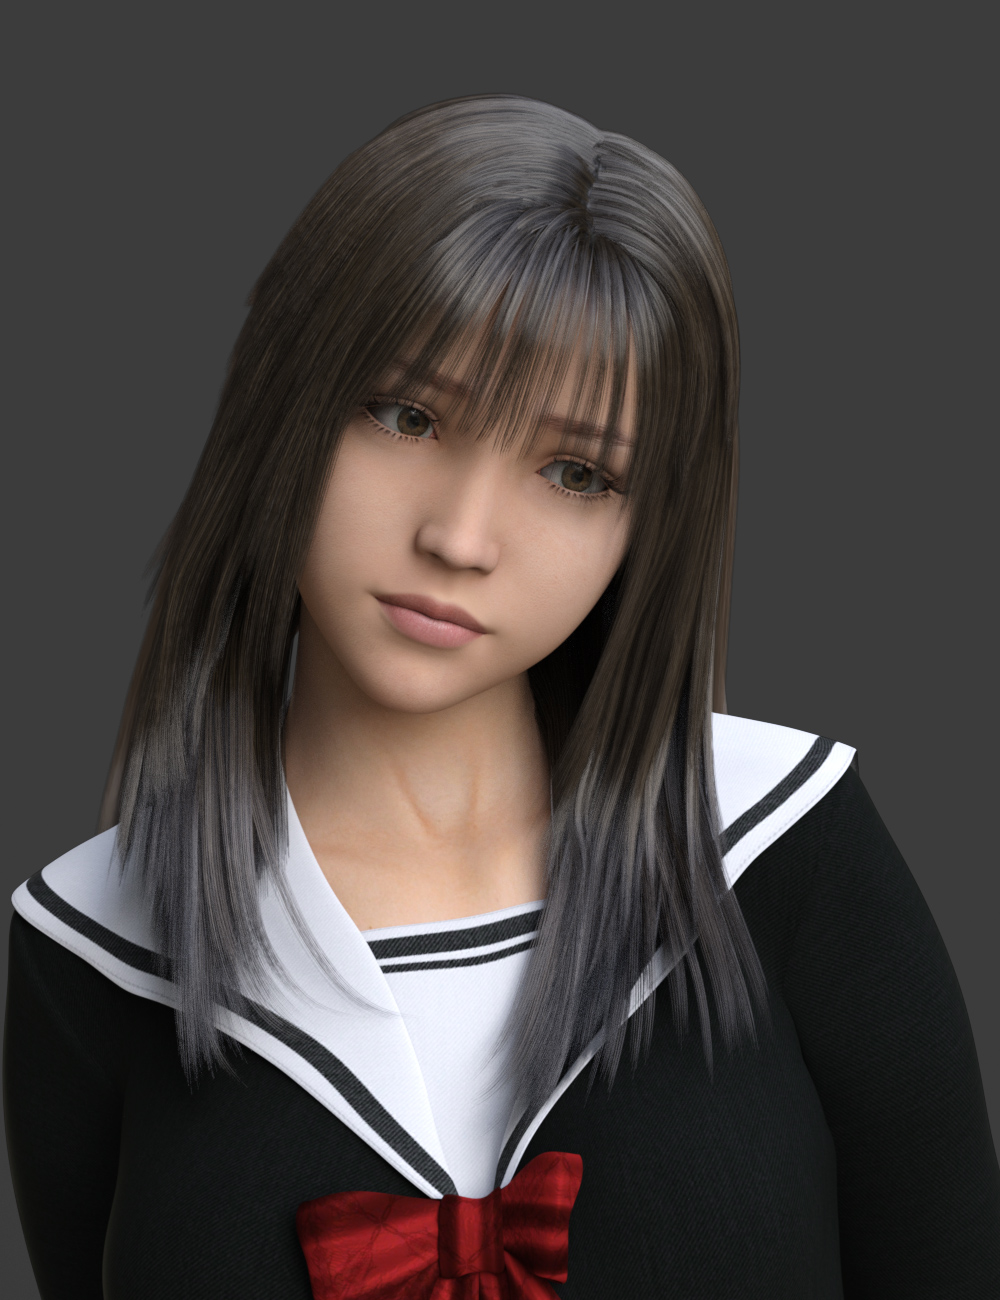 dForce Manami Hair for Genesis 8.1 Female by: kobamax, 3D Models by Daz 3D